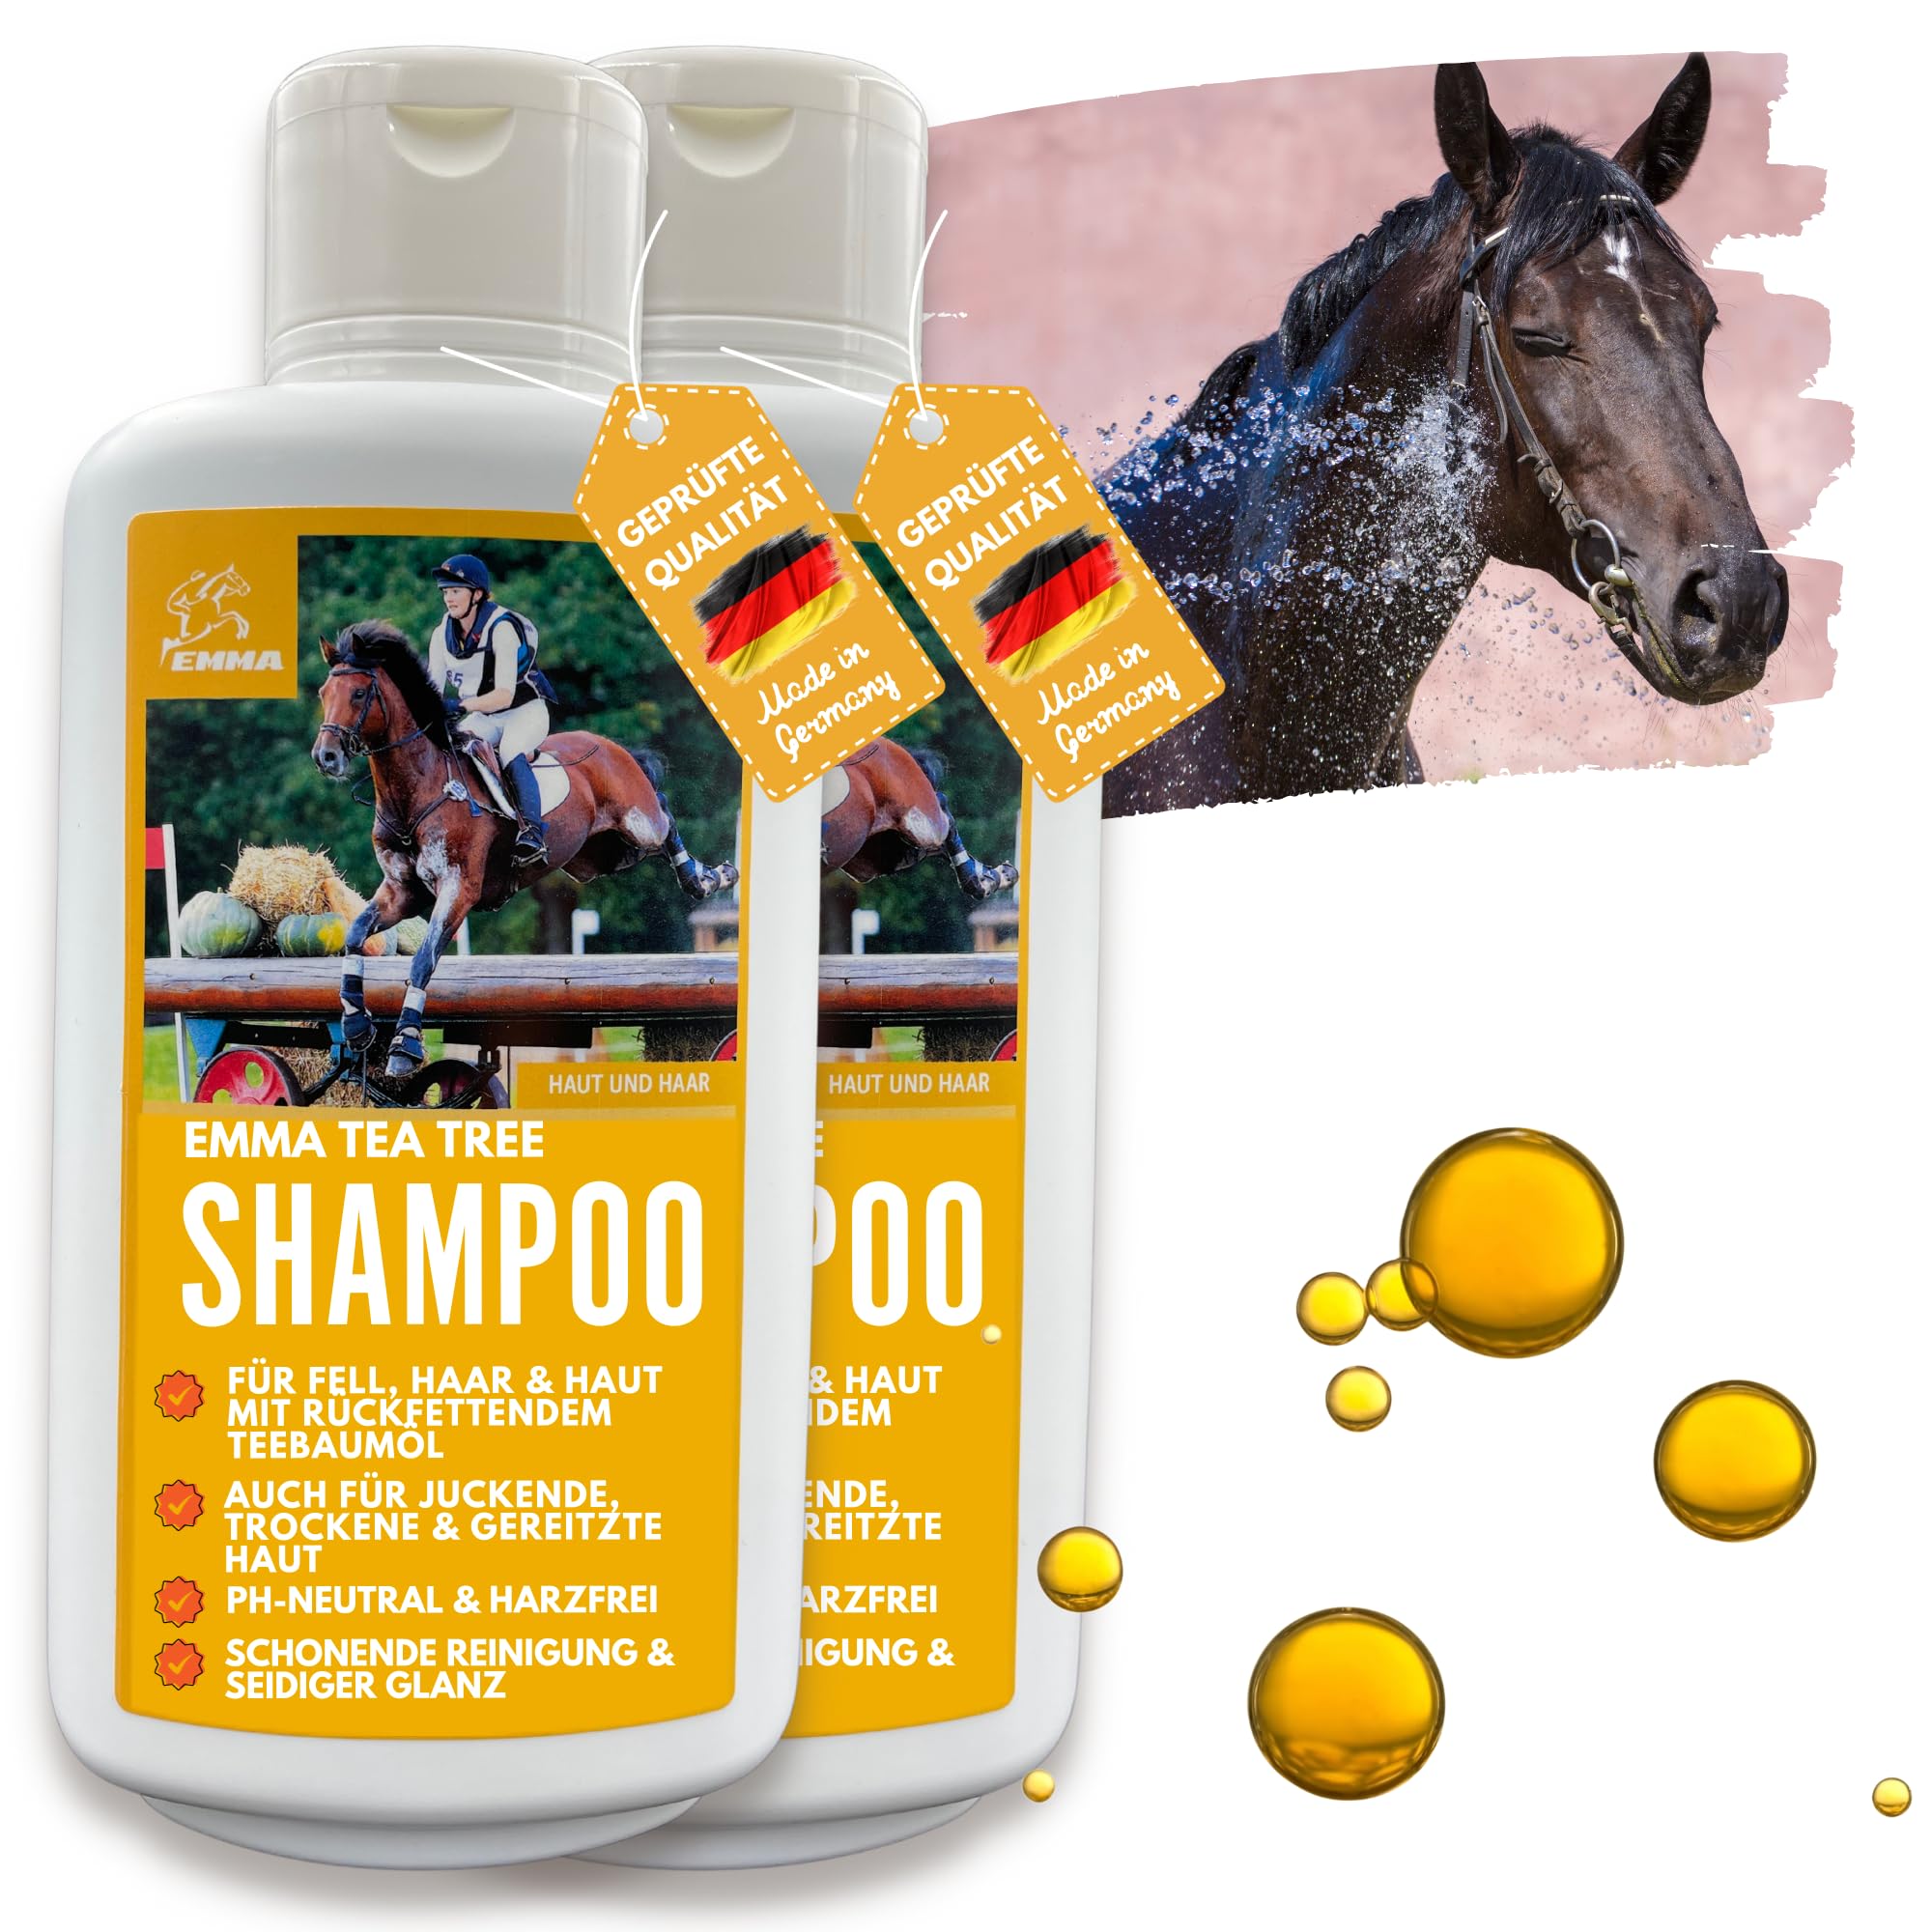 heba szampon dla ludzi i koni